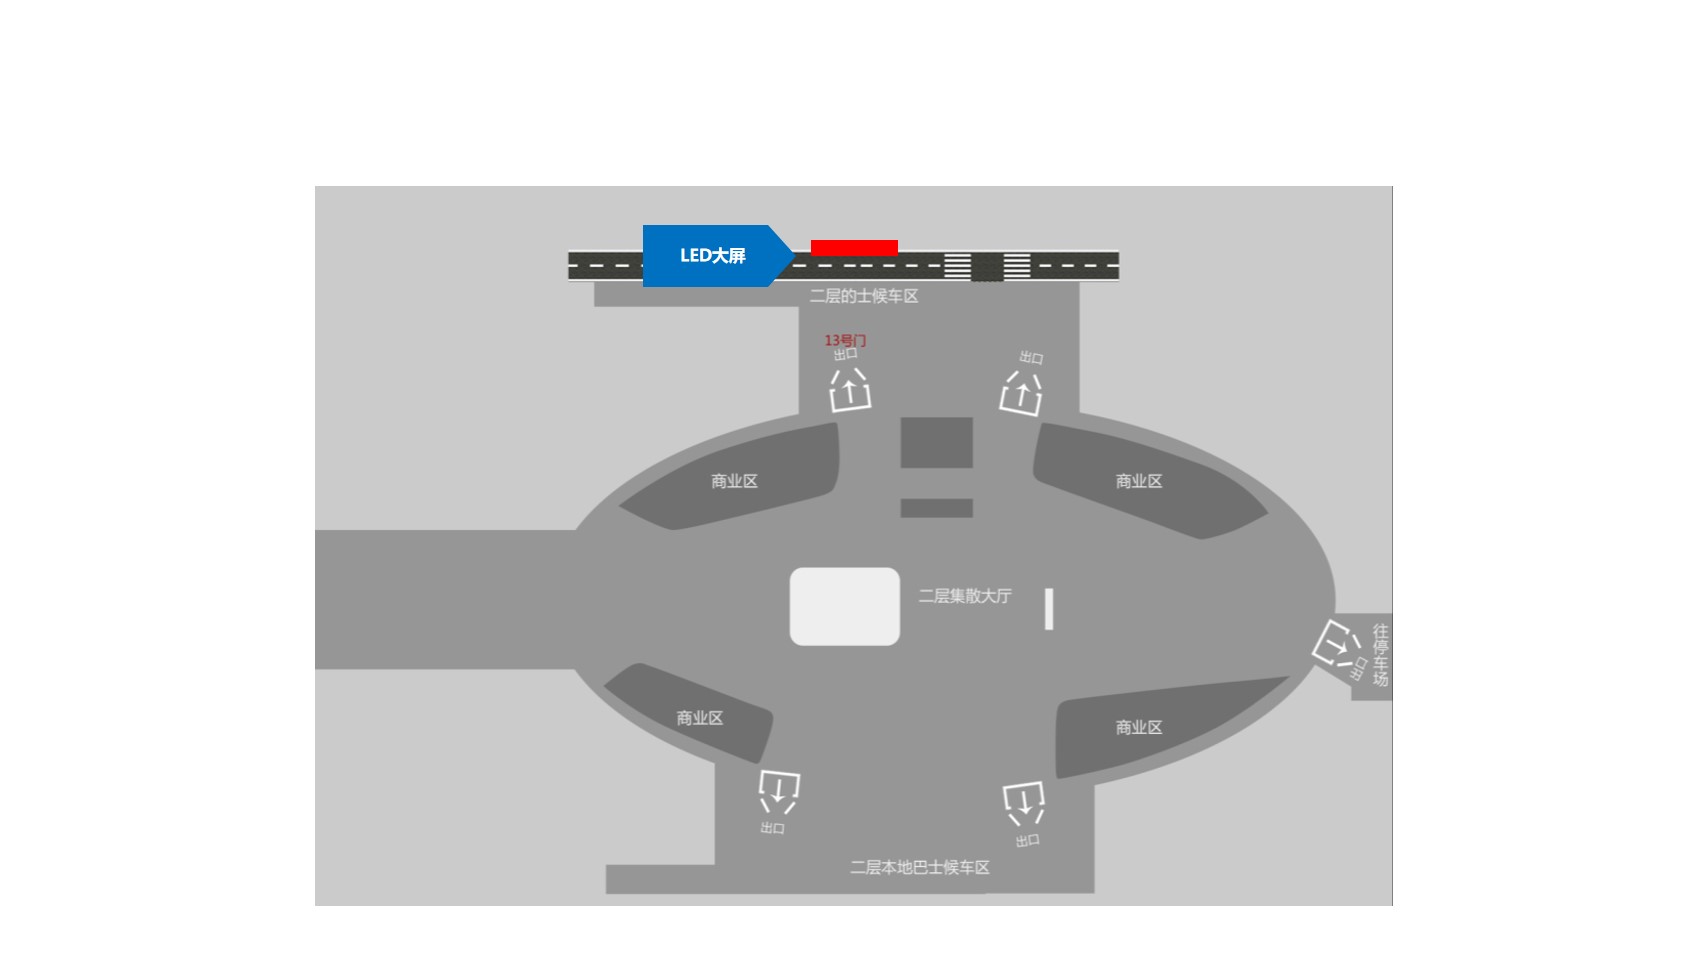 深圳机场广告-机场出租车等候区 LED大屏点位图